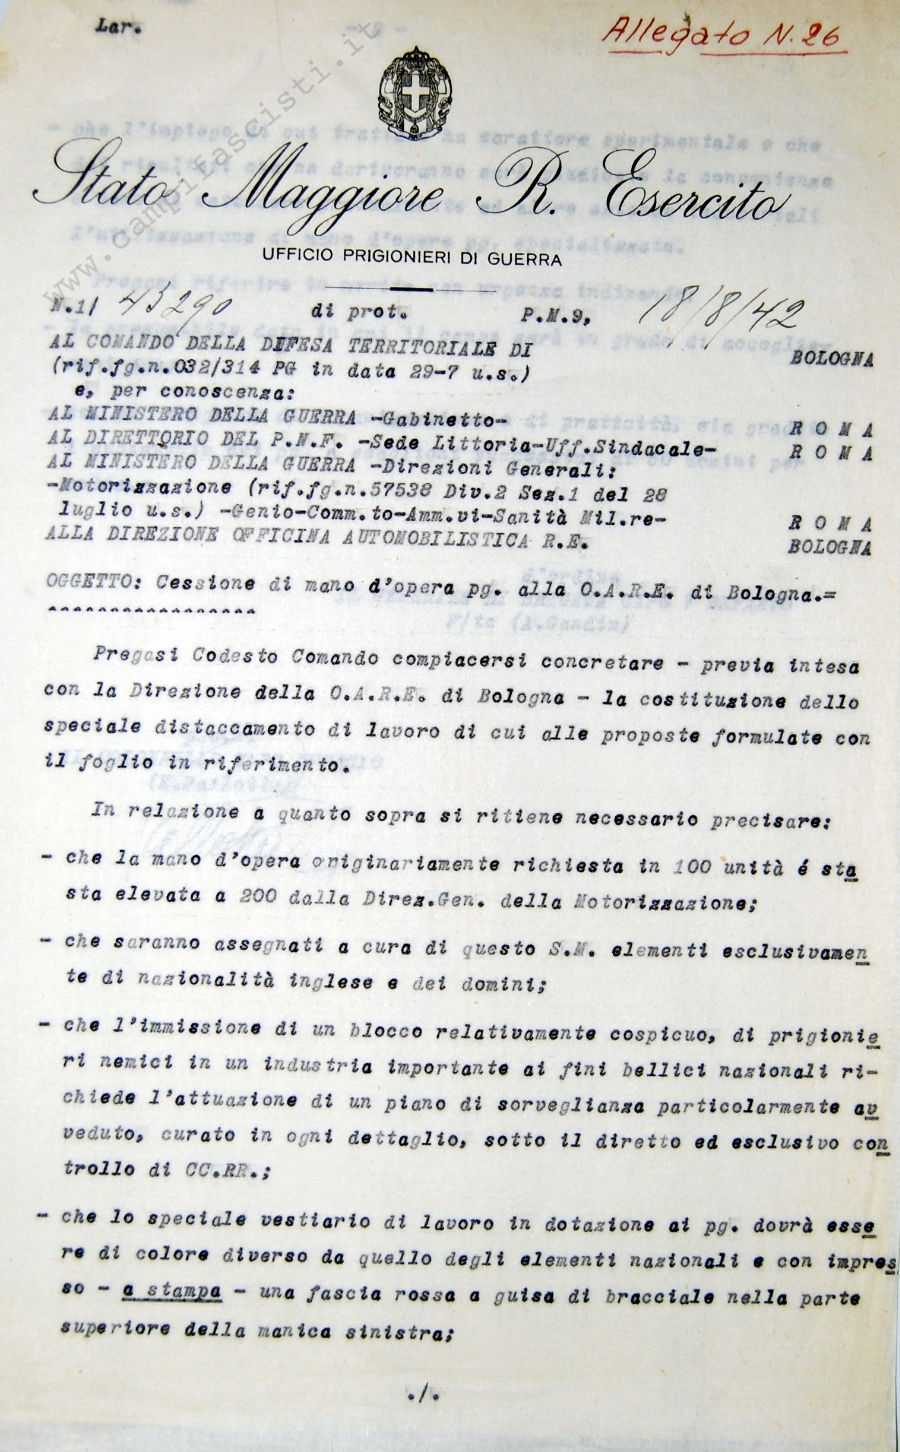 Cessione di mano d'opera prigionieri di guerra alla O.A.R.E. di Bologna